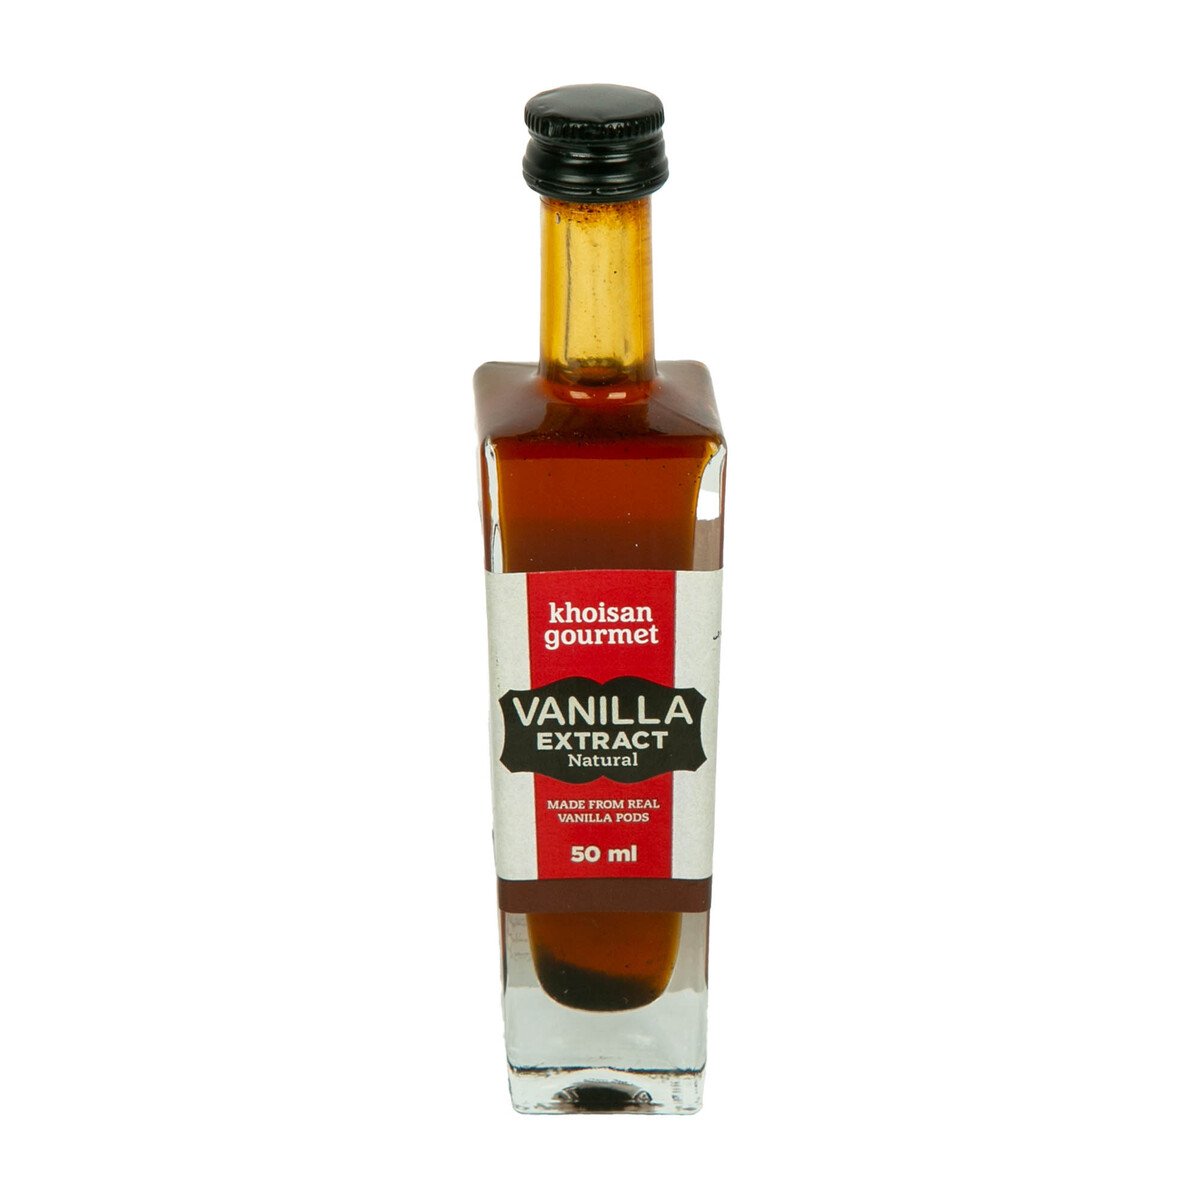 Khoisan Gourmet Vanilla Extract 50 ml